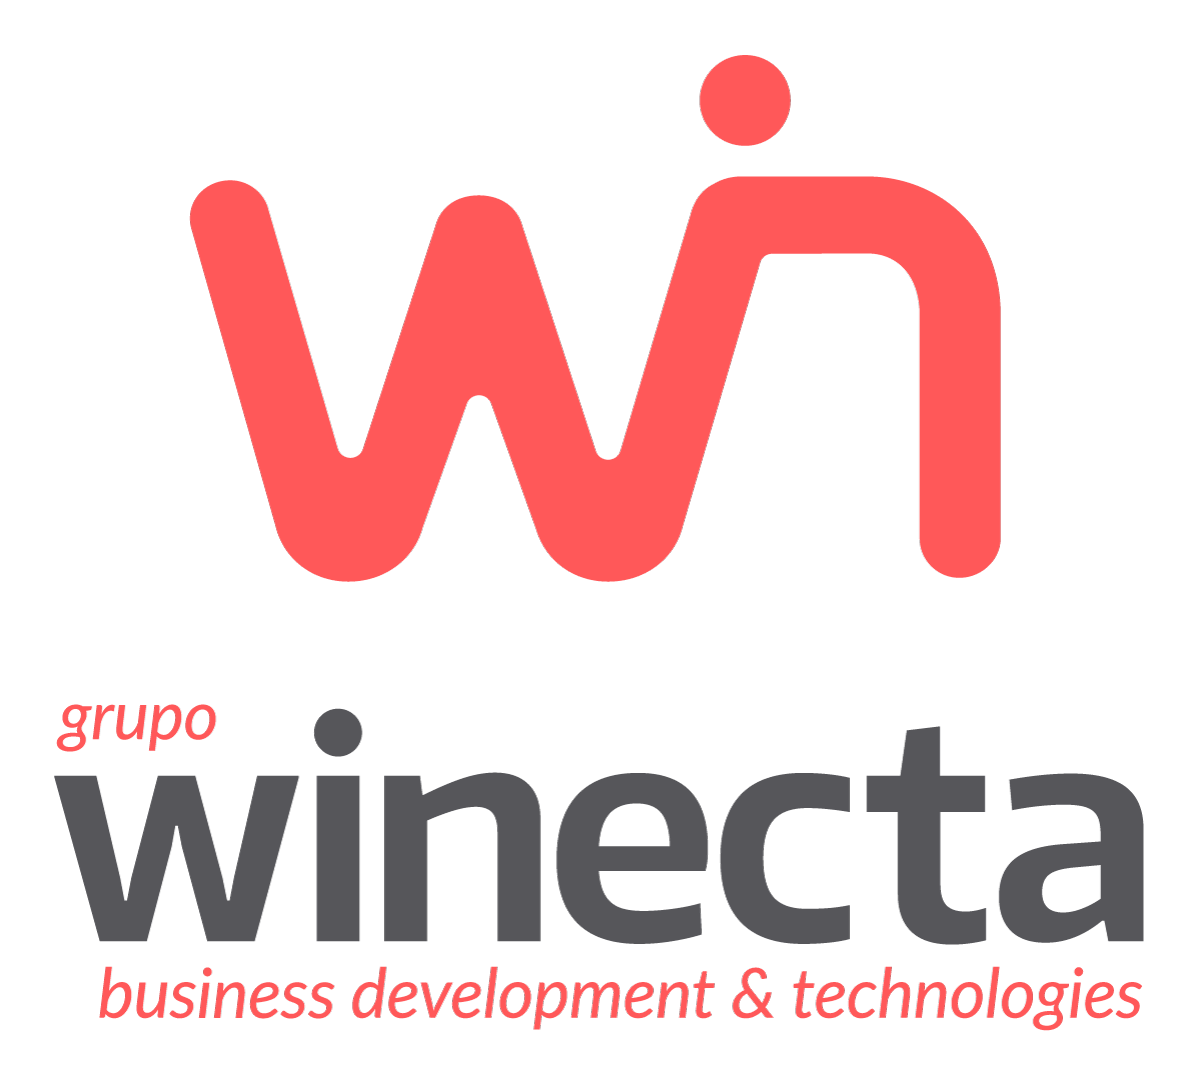 Grupo Winecta